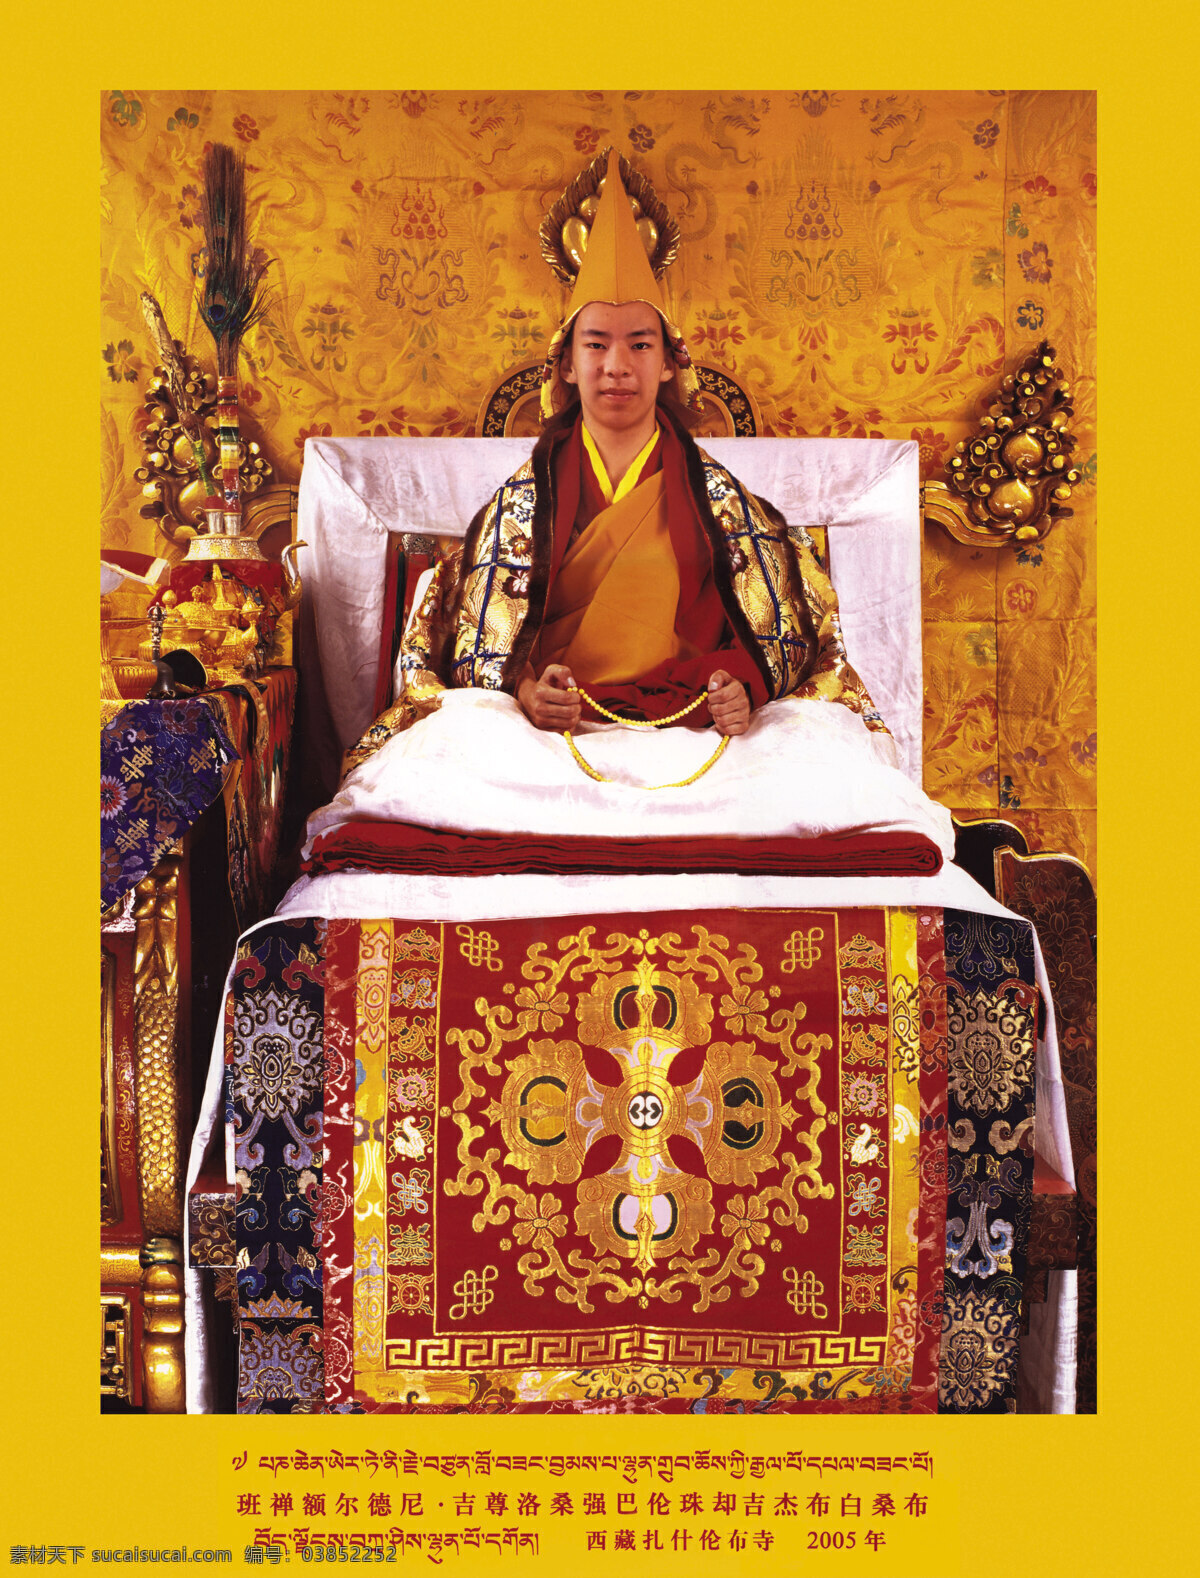 文化艺术 西藏 信仰 宗教 宗教信仰 十一世班禅 日喀则 十一世 班禅 活佛 扎什伦布寺 灵塔 西藏名族画册